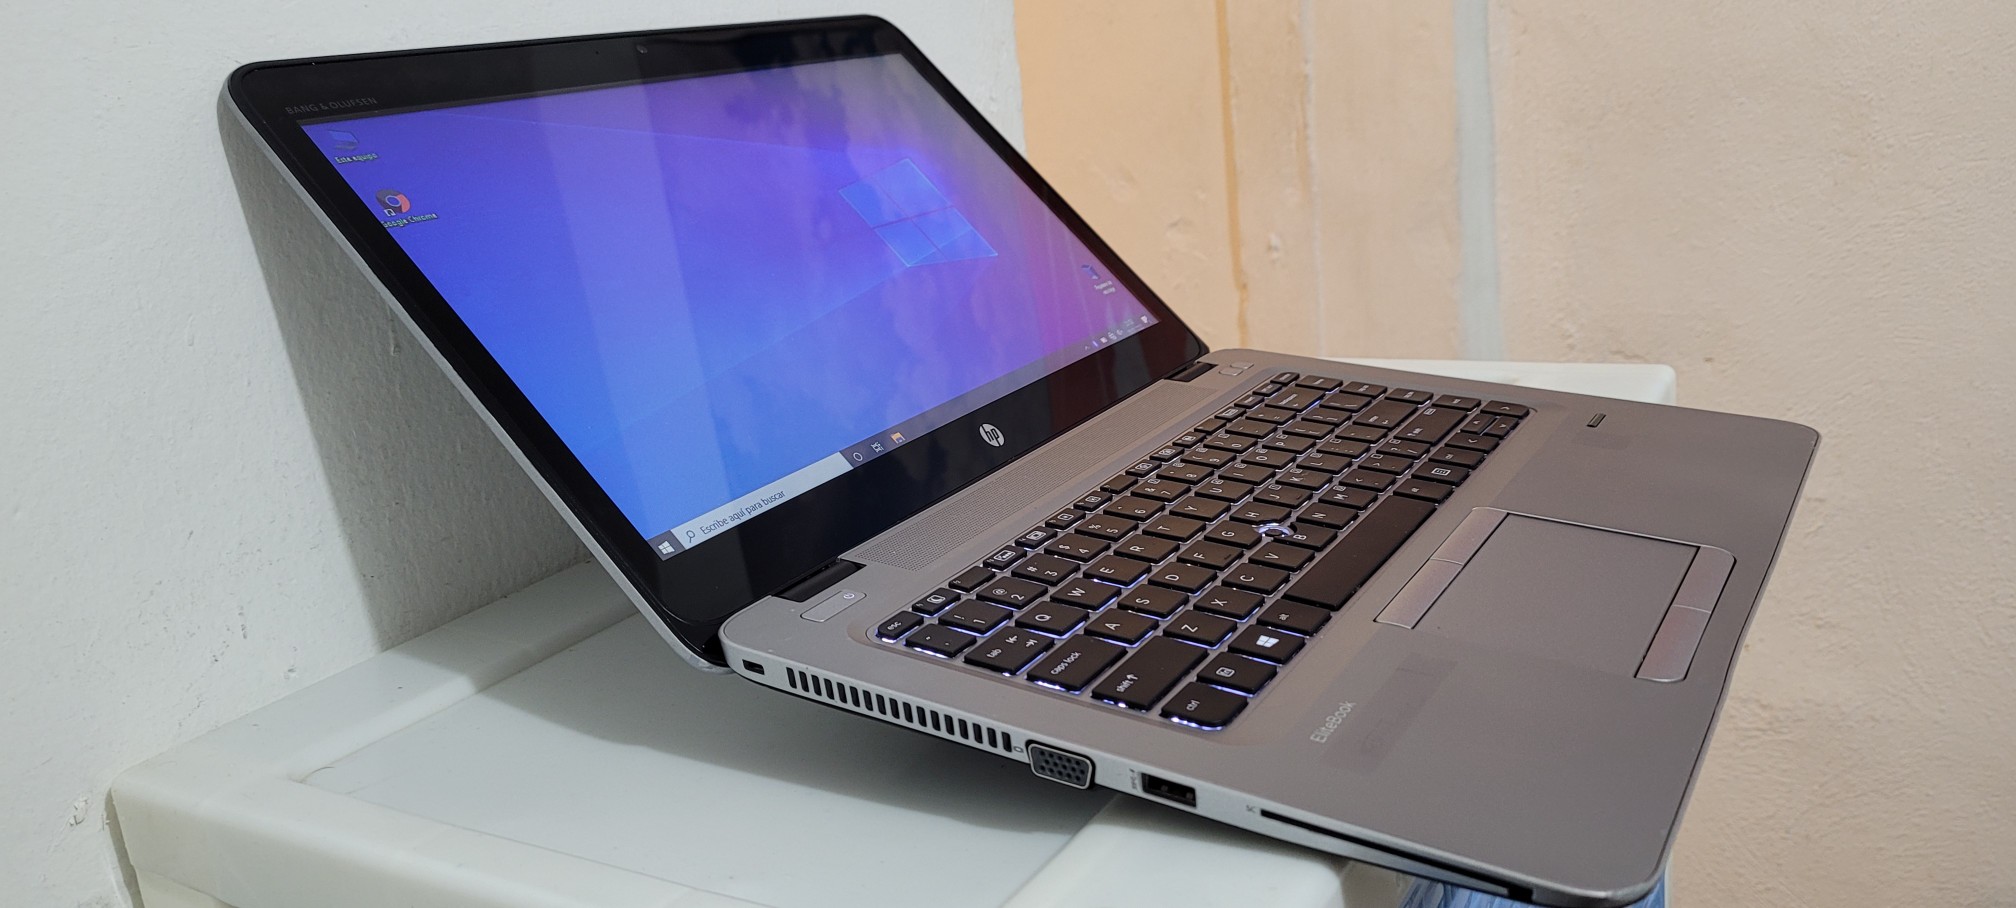 computadoras y laptops - Laptop hp 14 Pulg Core i5 6ta Ram 8gb ddr4 Disco 128gb SSD Y 320GB 1